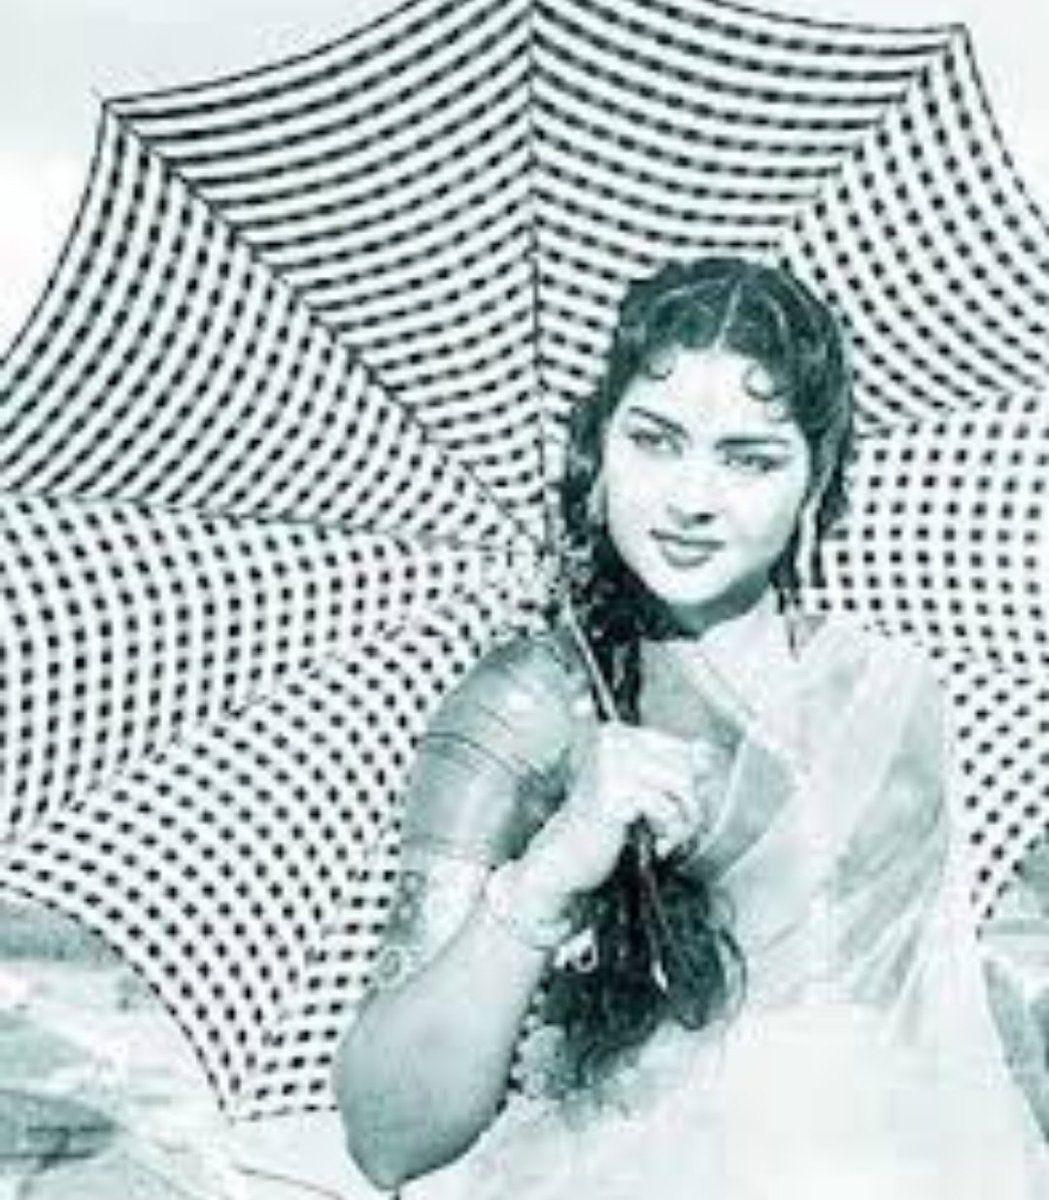 RIP: Telugu Actress Krishna Kumari Rare Photos